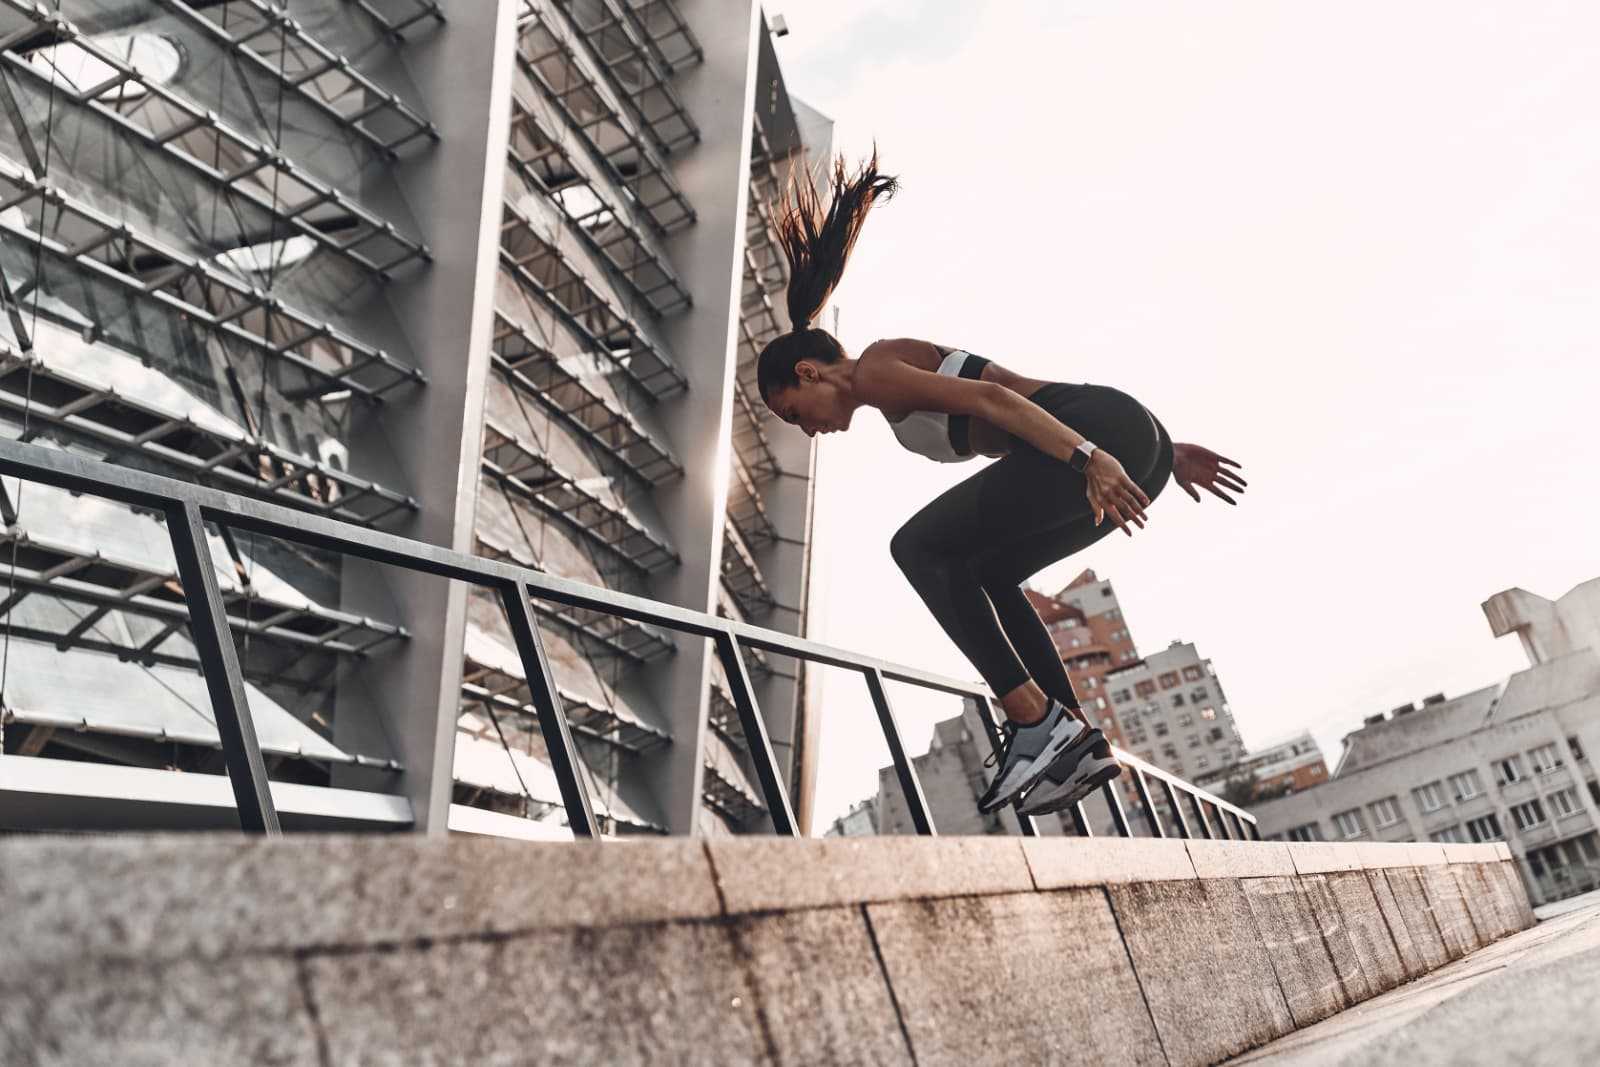 Woman jumping in an urban setting